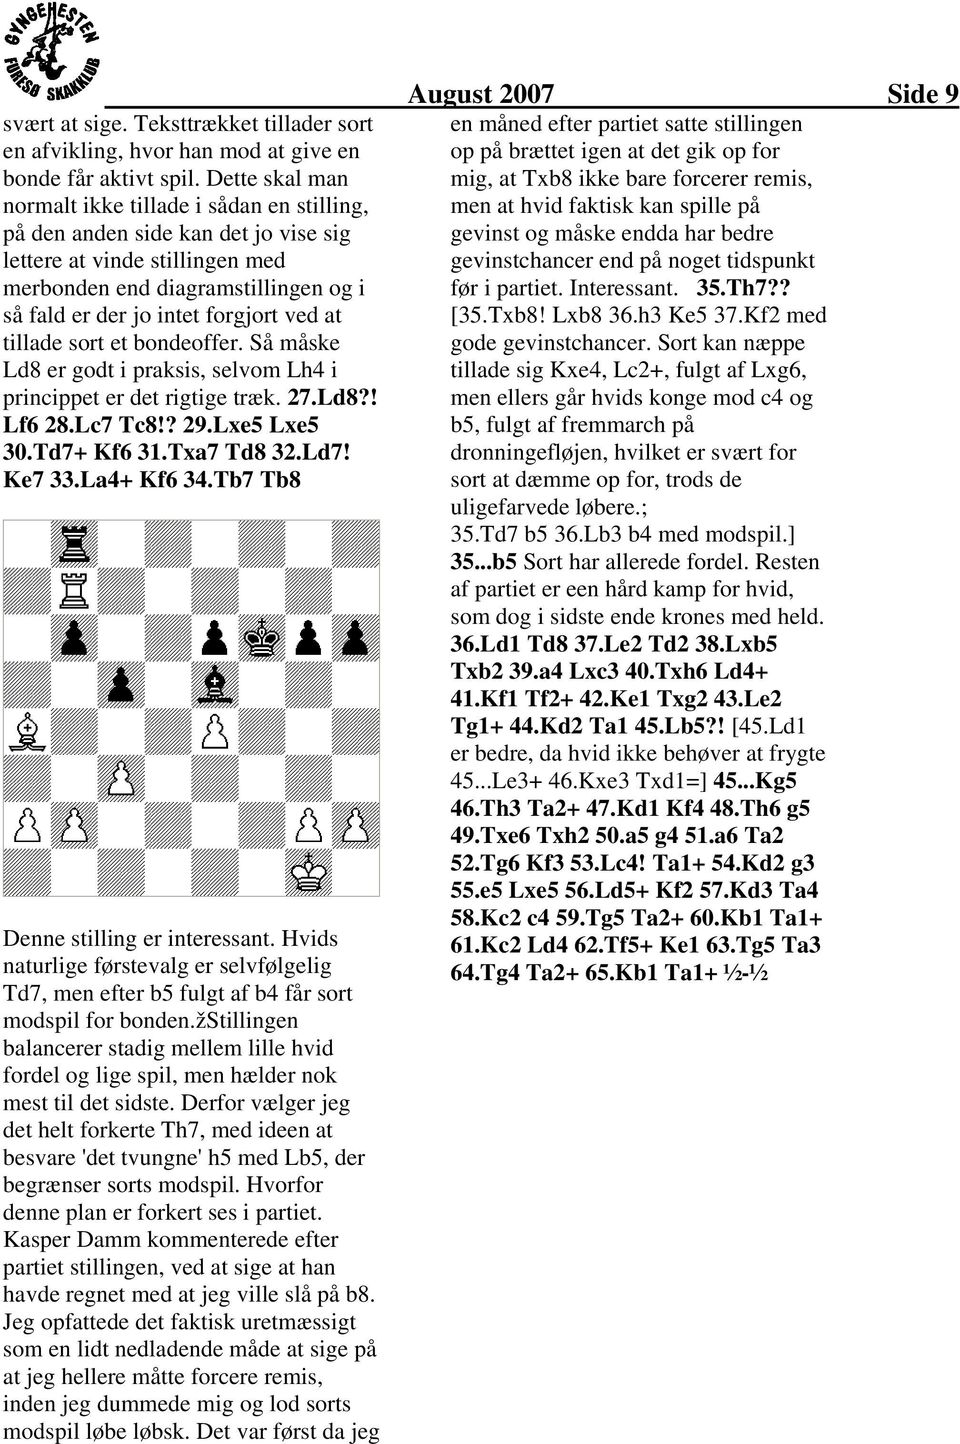 ved at tillade sort et bondeoffer. Så måske Ld8 er godt i praksis, selvom Lh4 i princippet er det rigtige træk. 27.Ld8?! Lf6 28.Lc7 Tc8!? 29.Lxe5 Lxe5 30.Td7+ Kf6 3.Txa7 Td8 32.Ld7! Ke7 33.